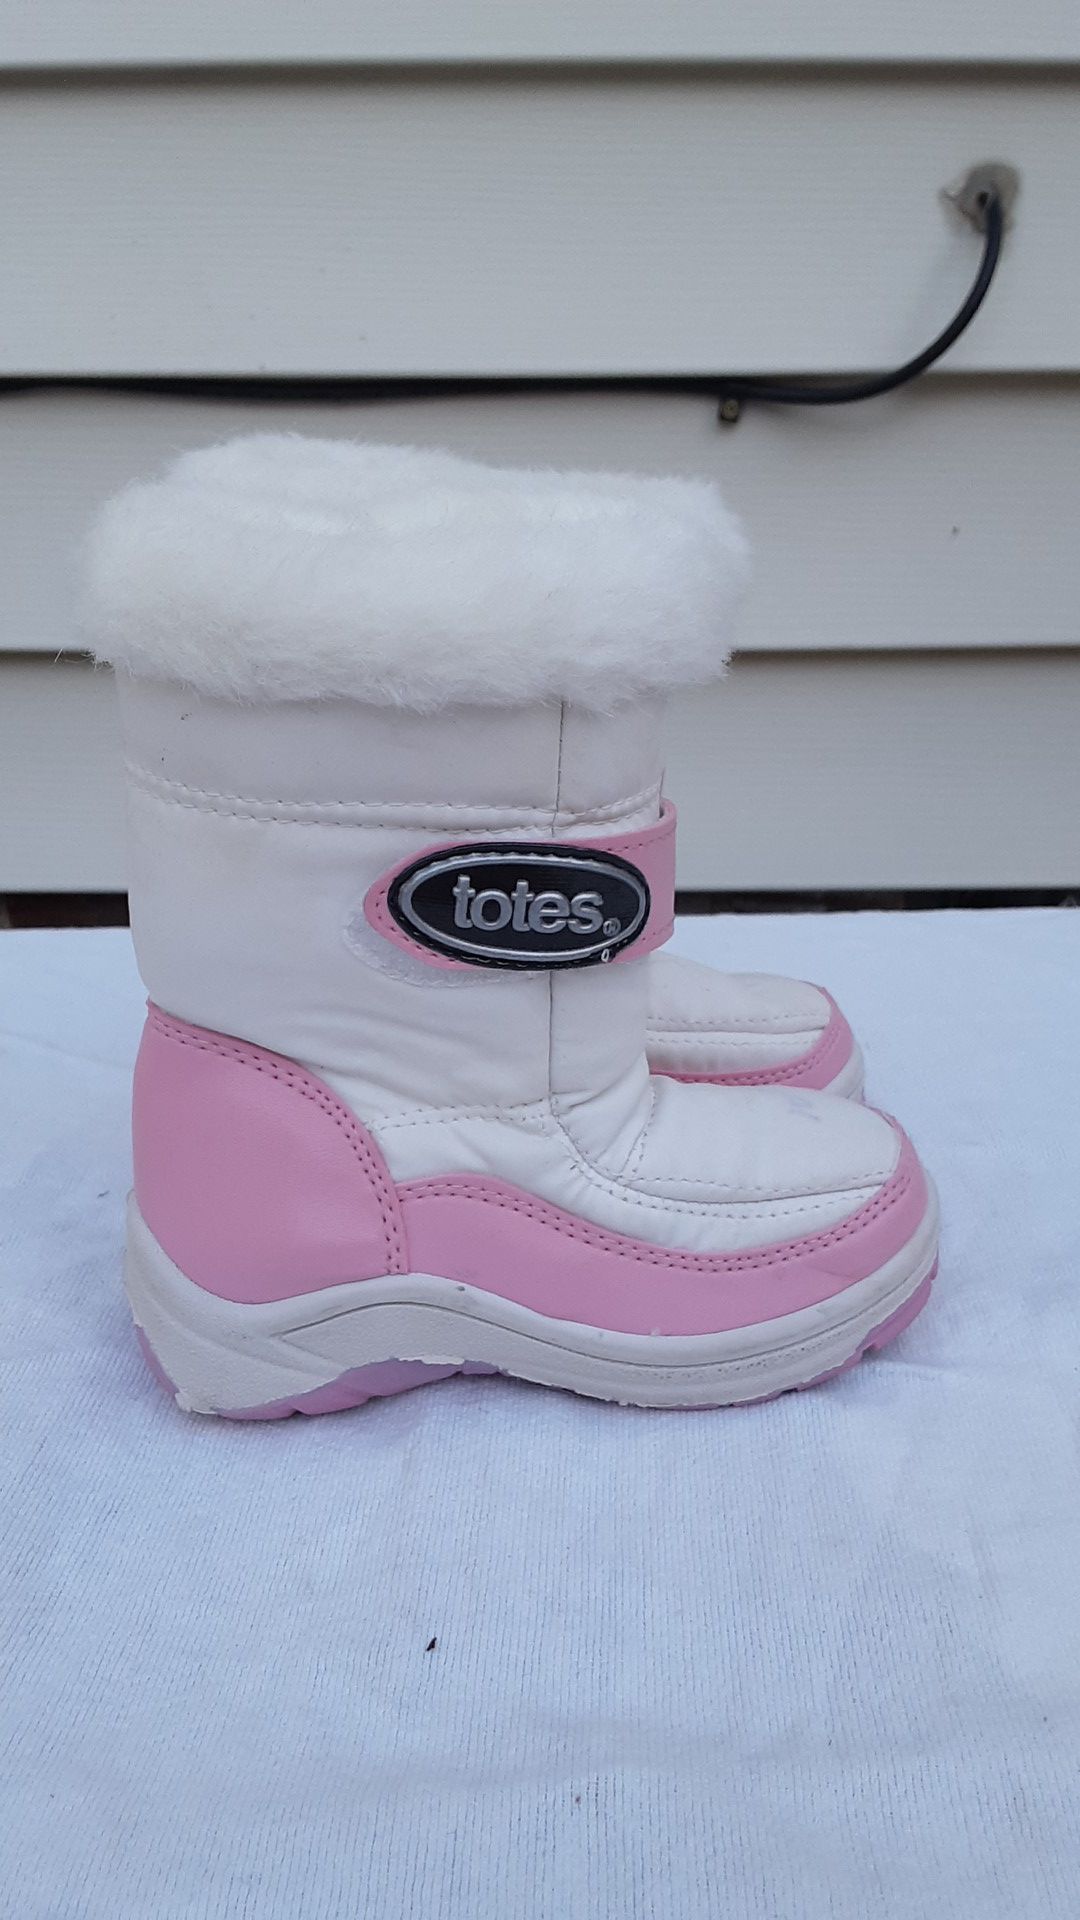 Girls winter boots